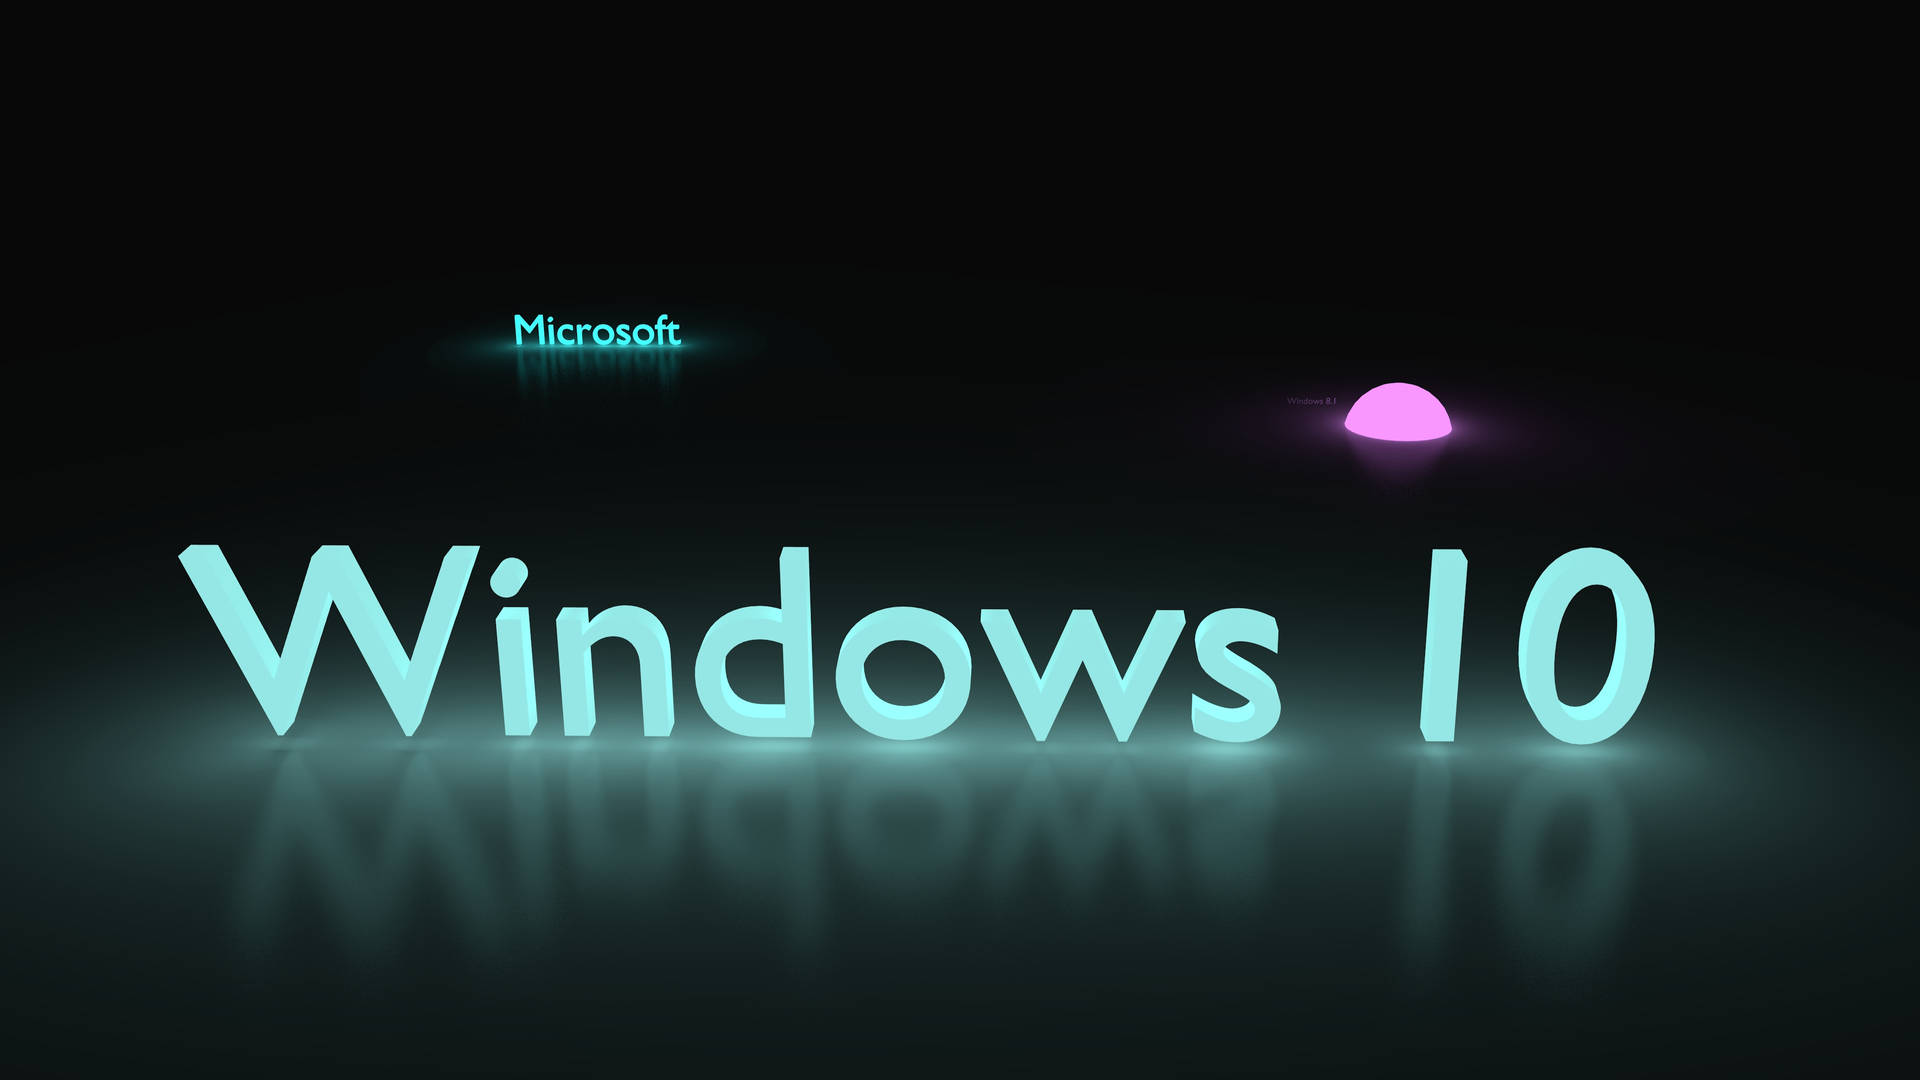 Papelde Parede Para Computador Ou Celular Do Windows 10 Em Hd De Cor Azul Glacial. Papel de Parede